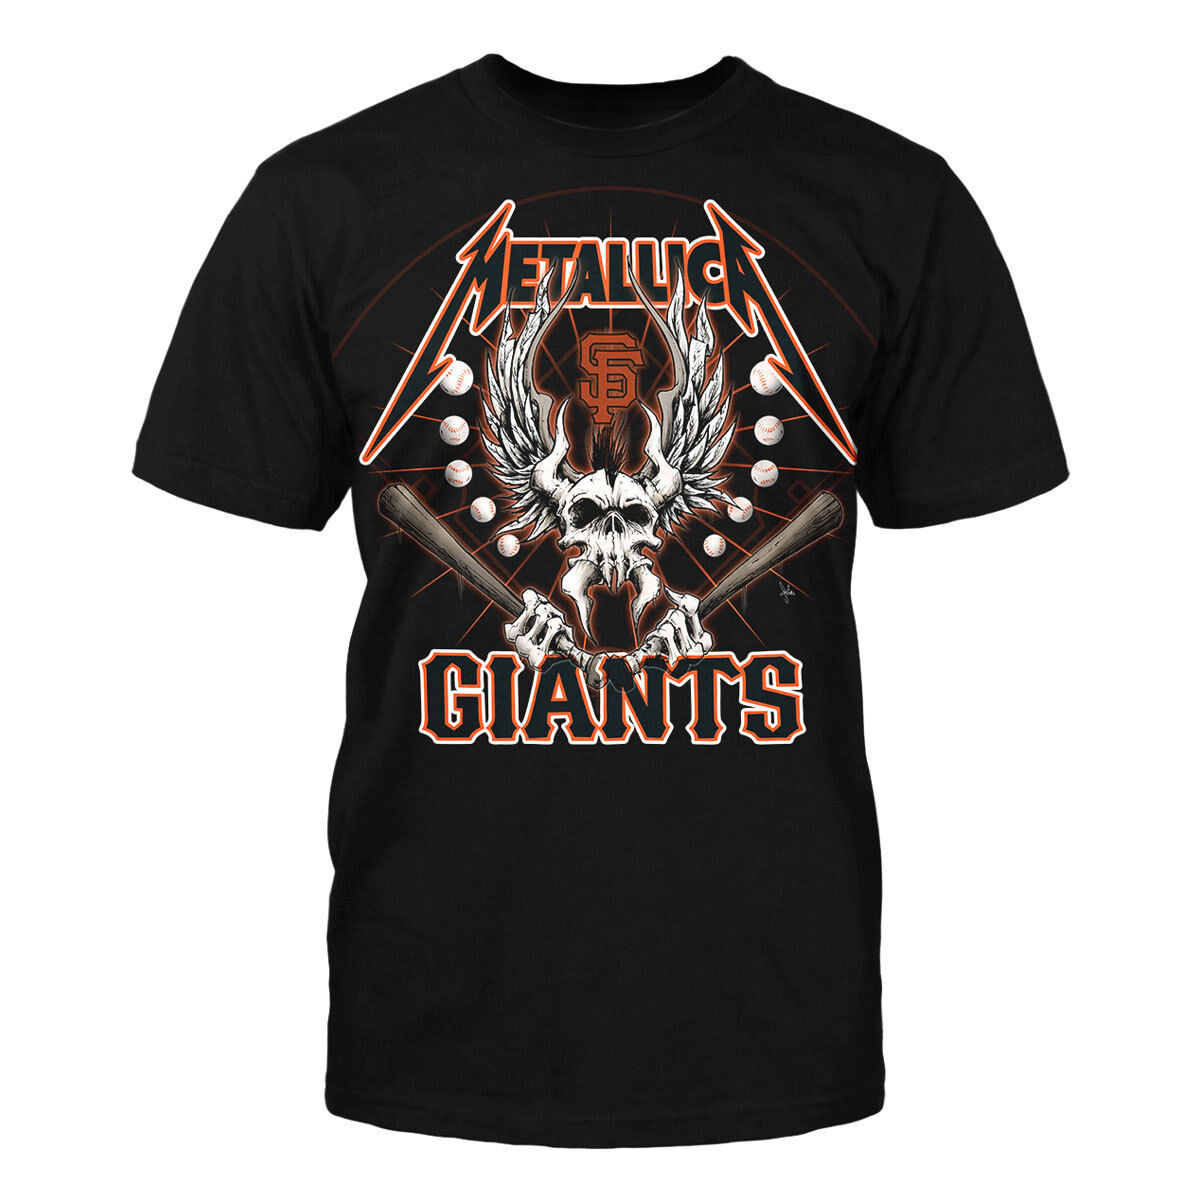 metallica giants shirt